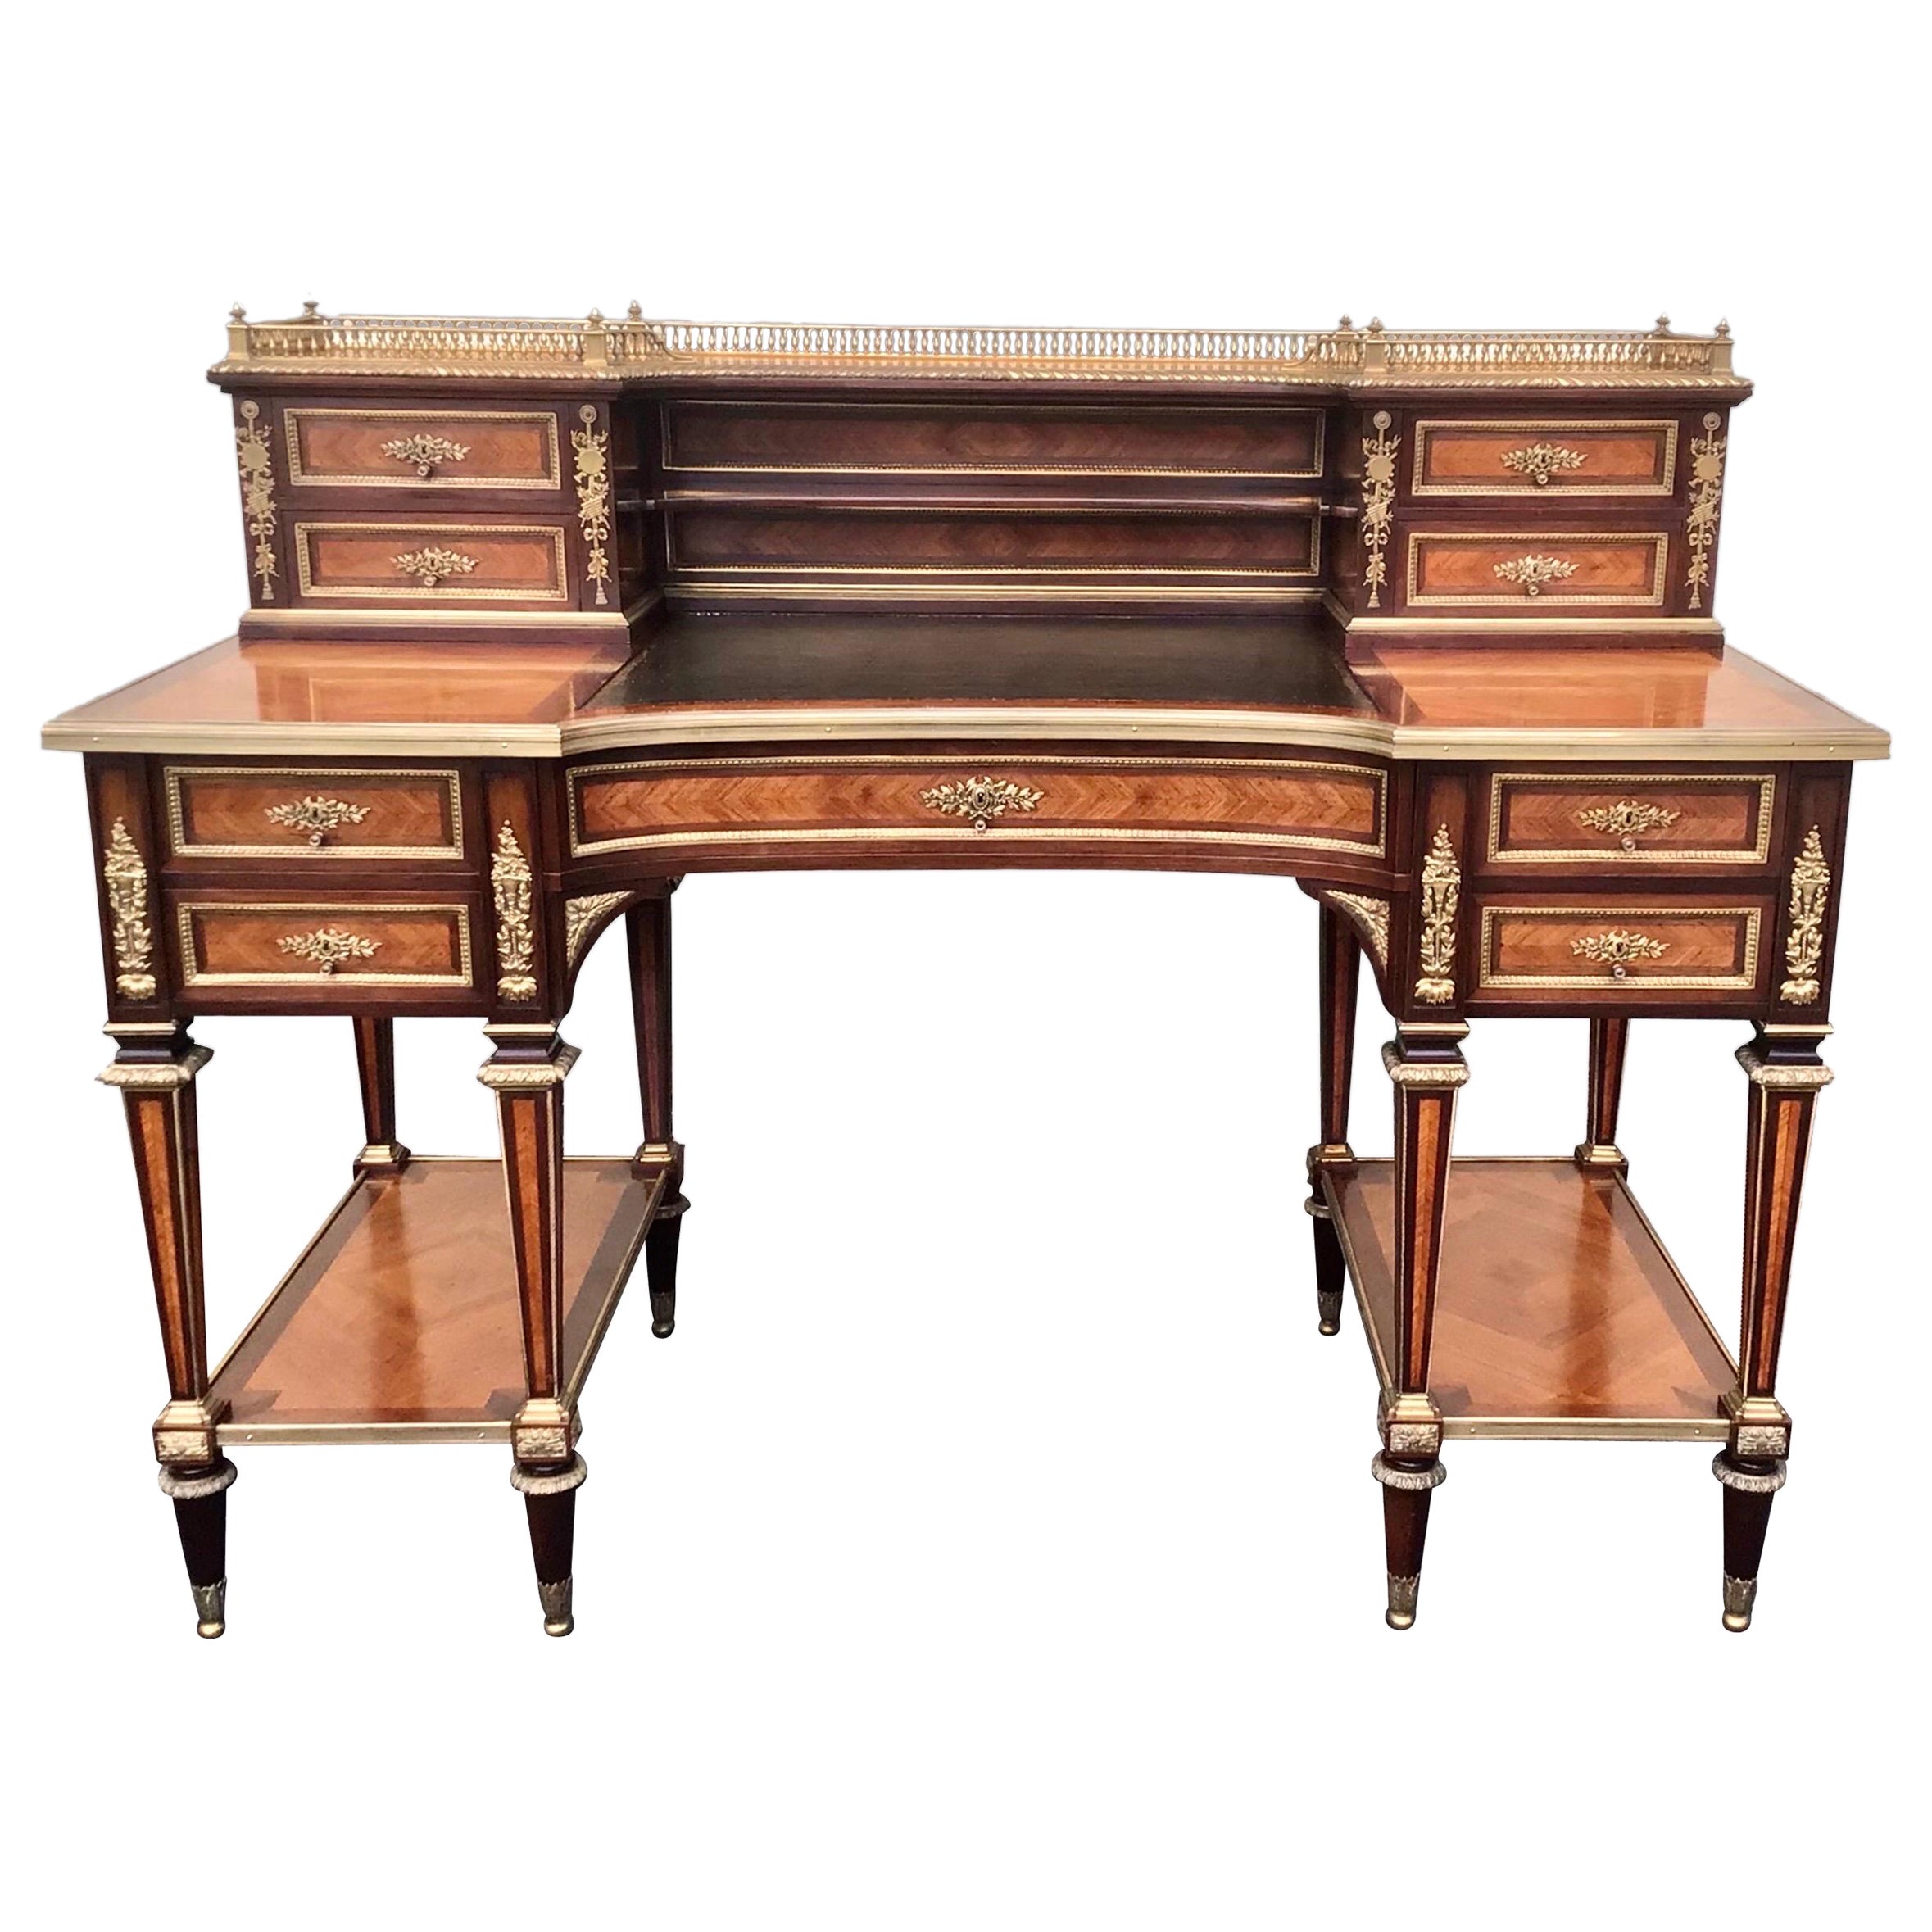 Antique French Ormolu Mounted Kingwood Desk by J Werner For Sale